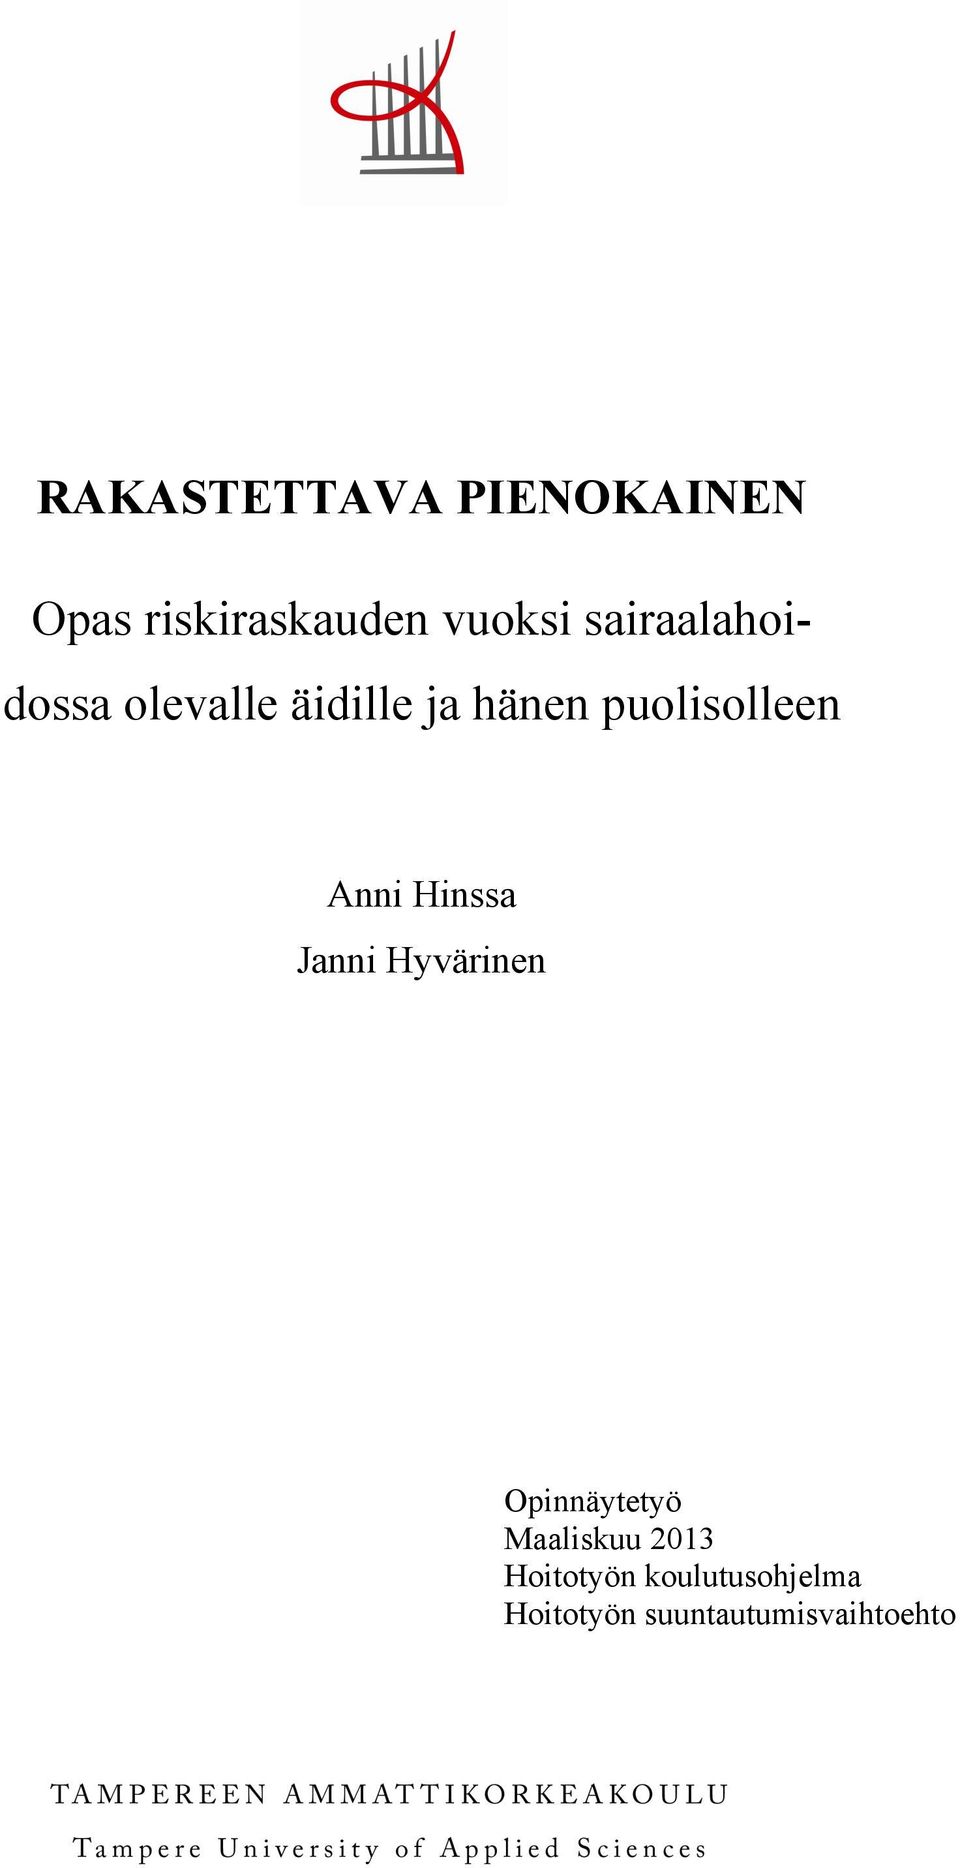 Anni Hinssa Janni Hyvärinen Opinnäytetyö Maaliskuu 2013